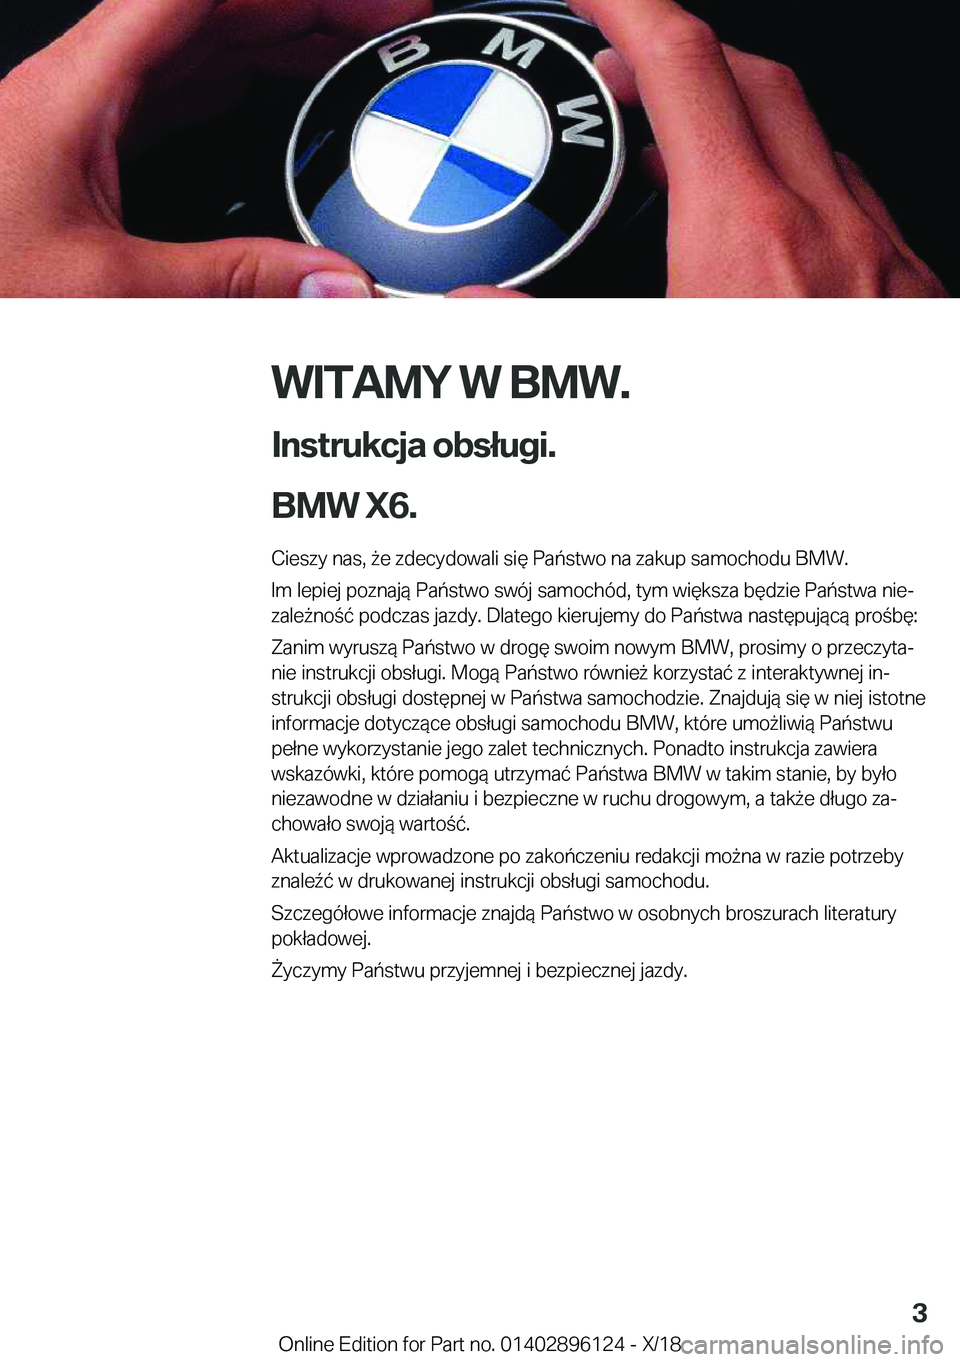 BMW X6 2019  Instrukcja obsługi (in Polish) �W�I�T�A�M�Y��W��B�M�W�.
�I�n�s�t�r�u�k�c�j�a��o�b�s�ł�u�g�i�.
�B�M�W��X�6�. �C�i�e�s�z�y��n�a�s�,�9�e��z�d�e�c�y�d�o�w�a�l�i��s�i�